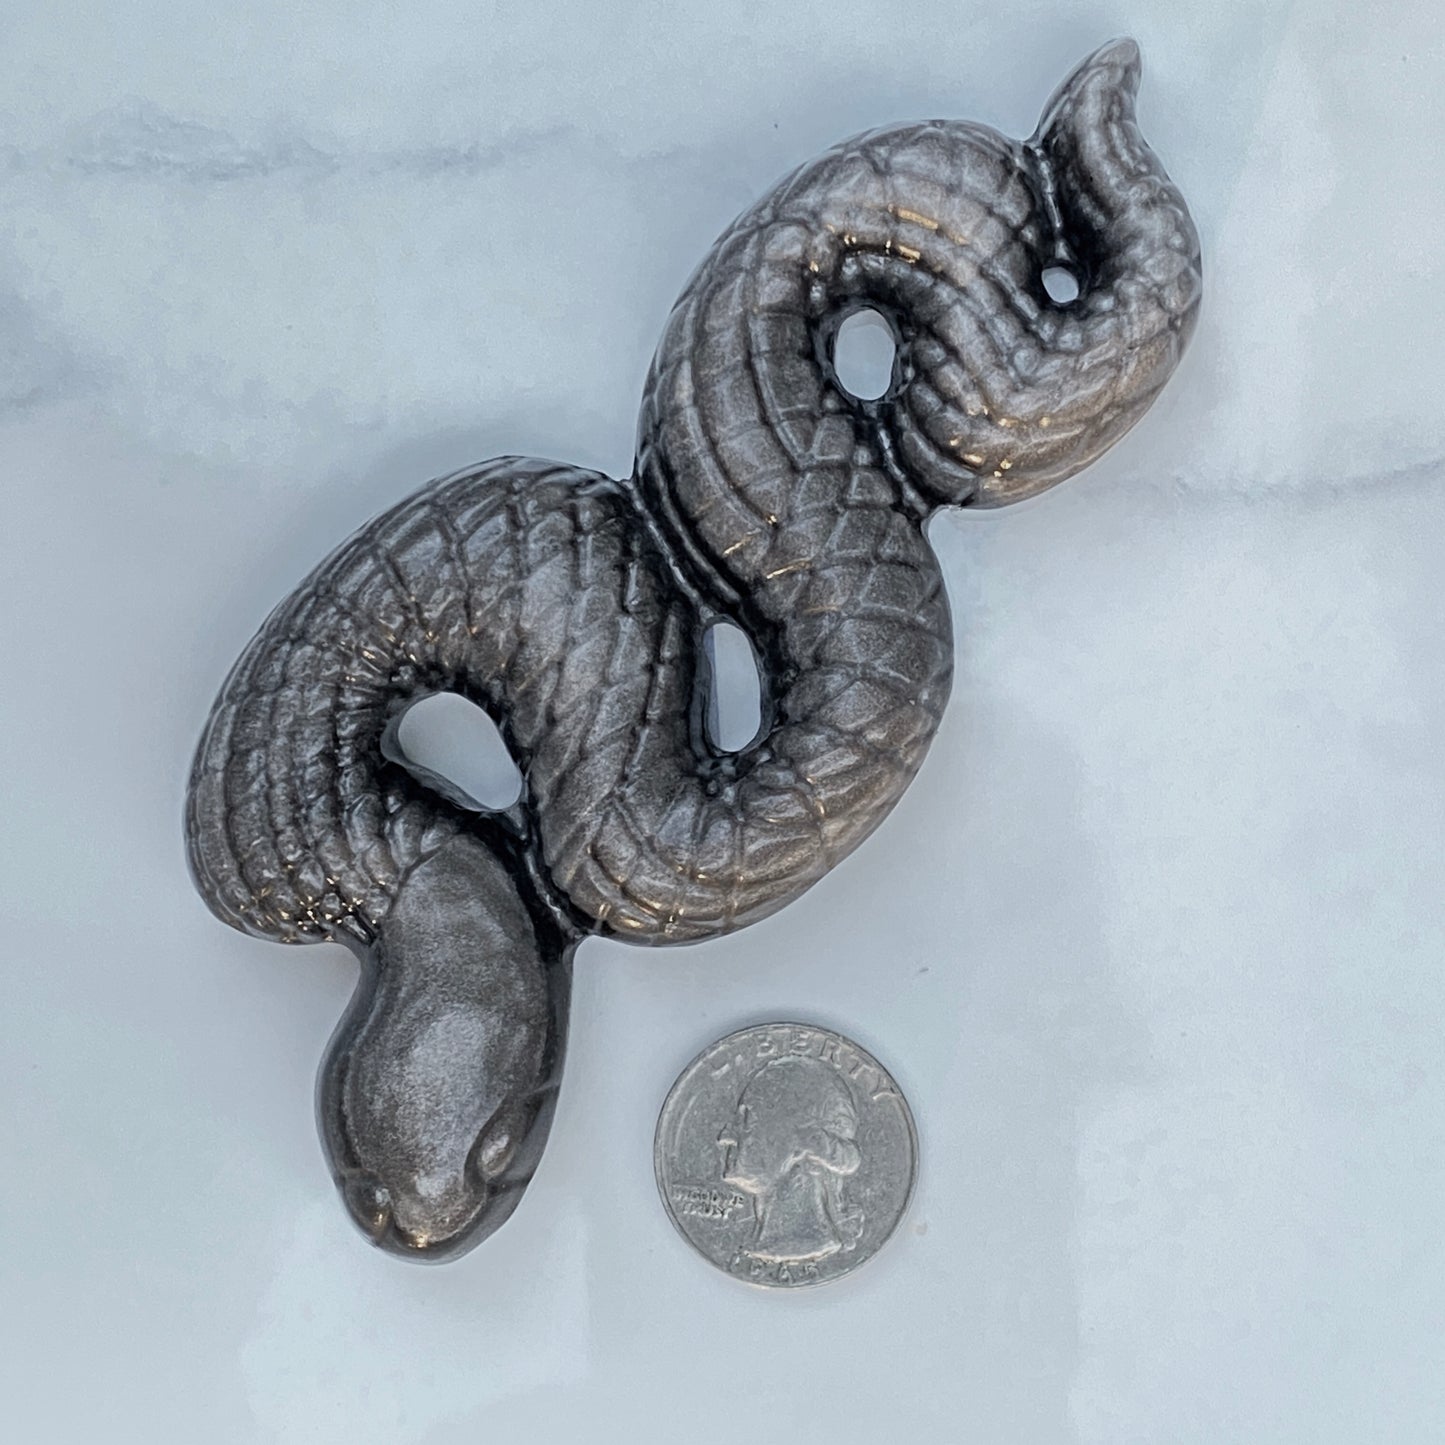 Gemstone Carved Snakes